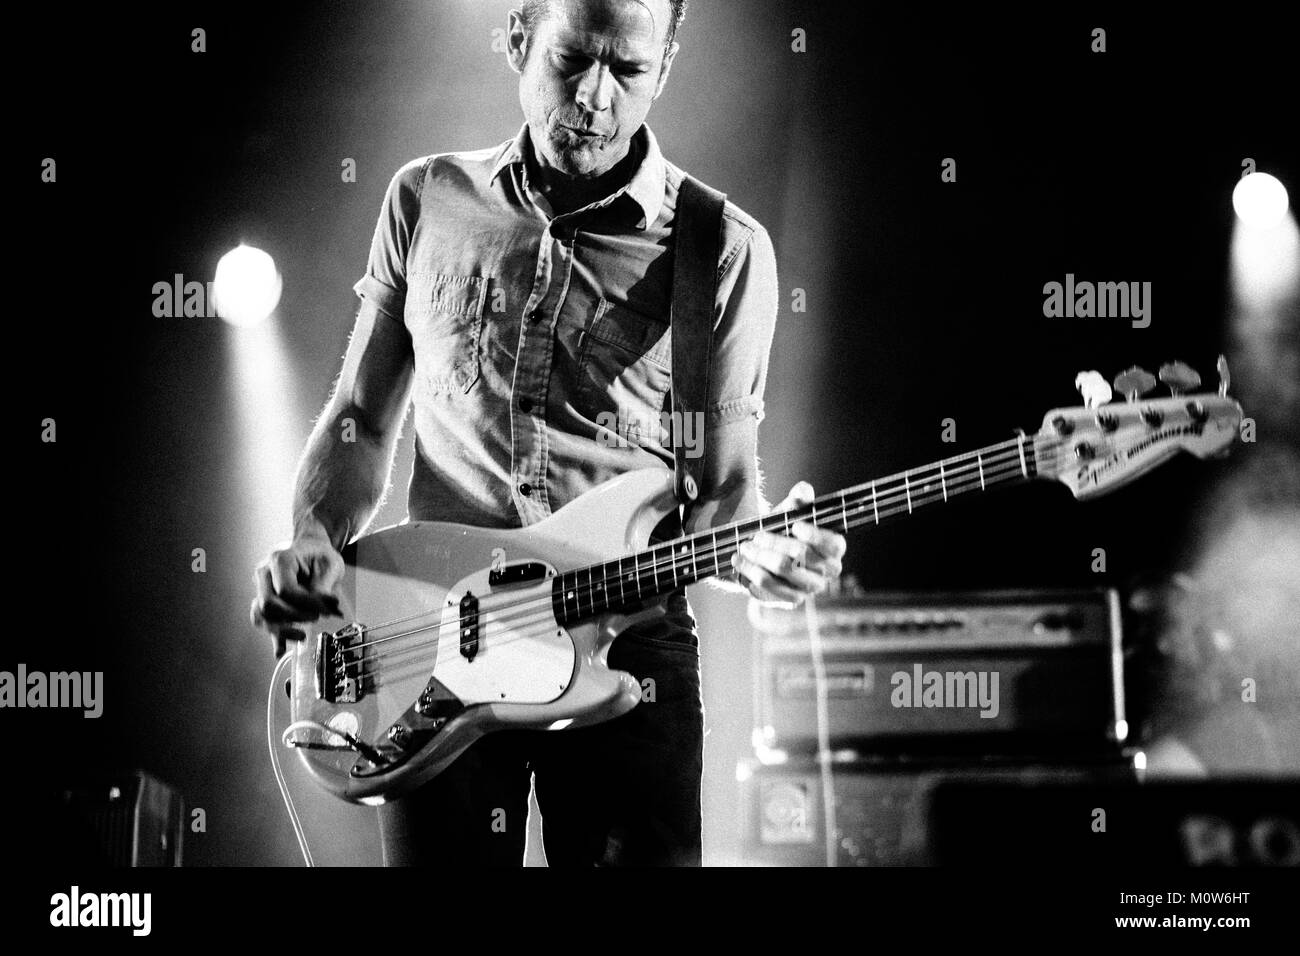 Le groupe de rock indépendant américain Deerhunter effectue un concert live à l'Arena Stade au Roskilde Festival 2014. Ici le bassiste Josh McKay est représenté sur scène. Danemark 06.07.2014. Banque D'Images